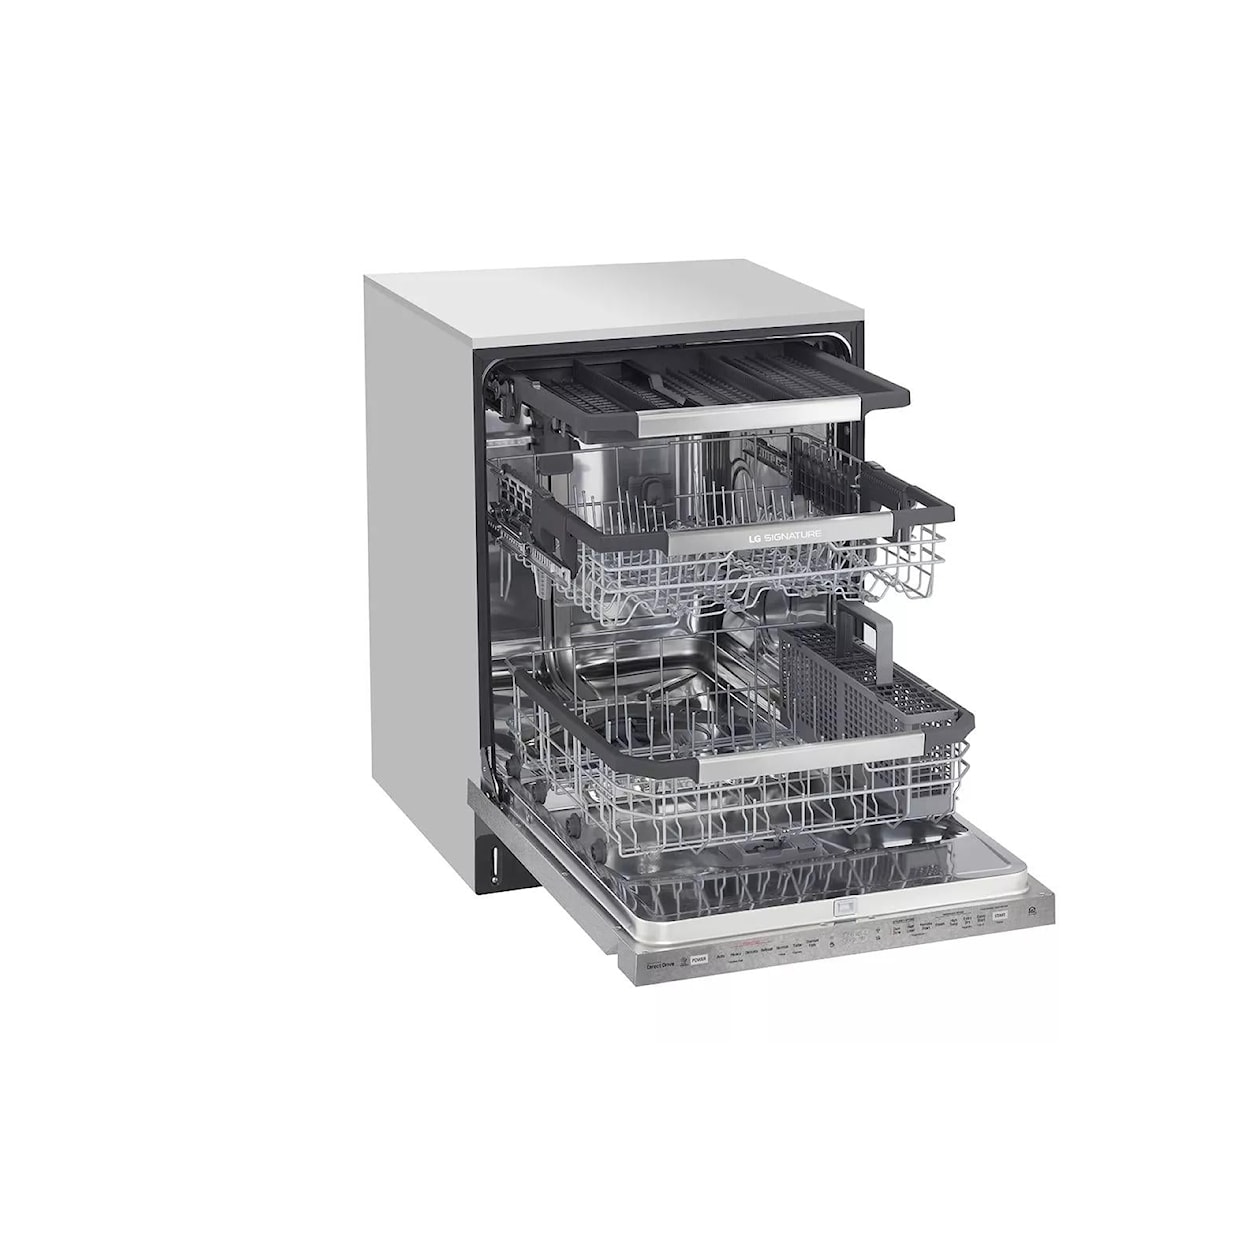 LG Appliances Dishwashers Dishwasher